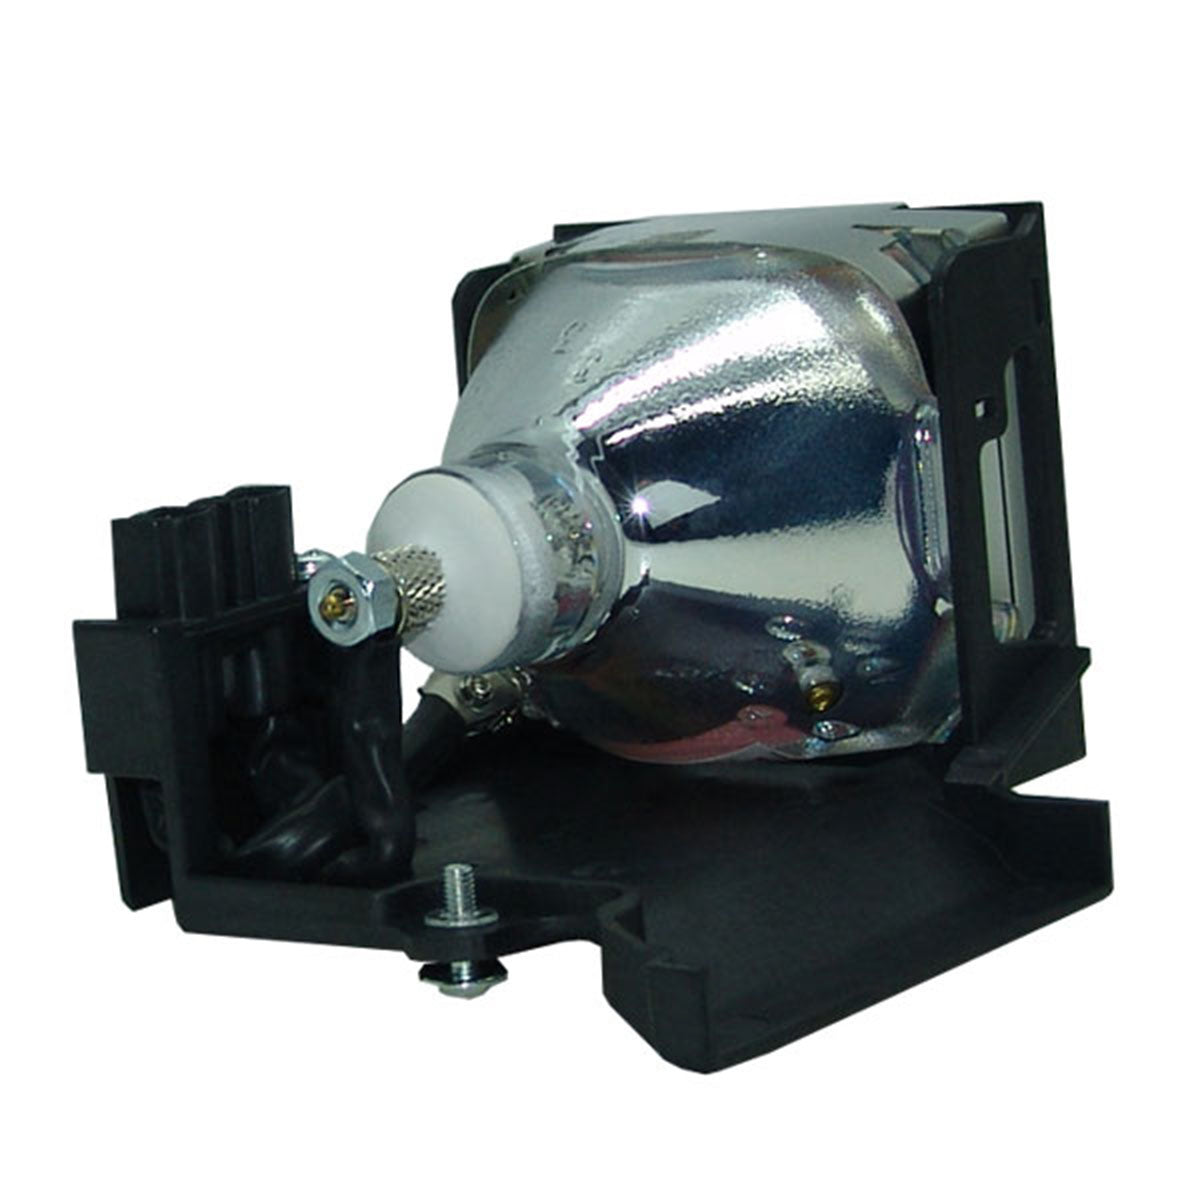 Yokogawa D1100S Compatible Projector Lamp Module